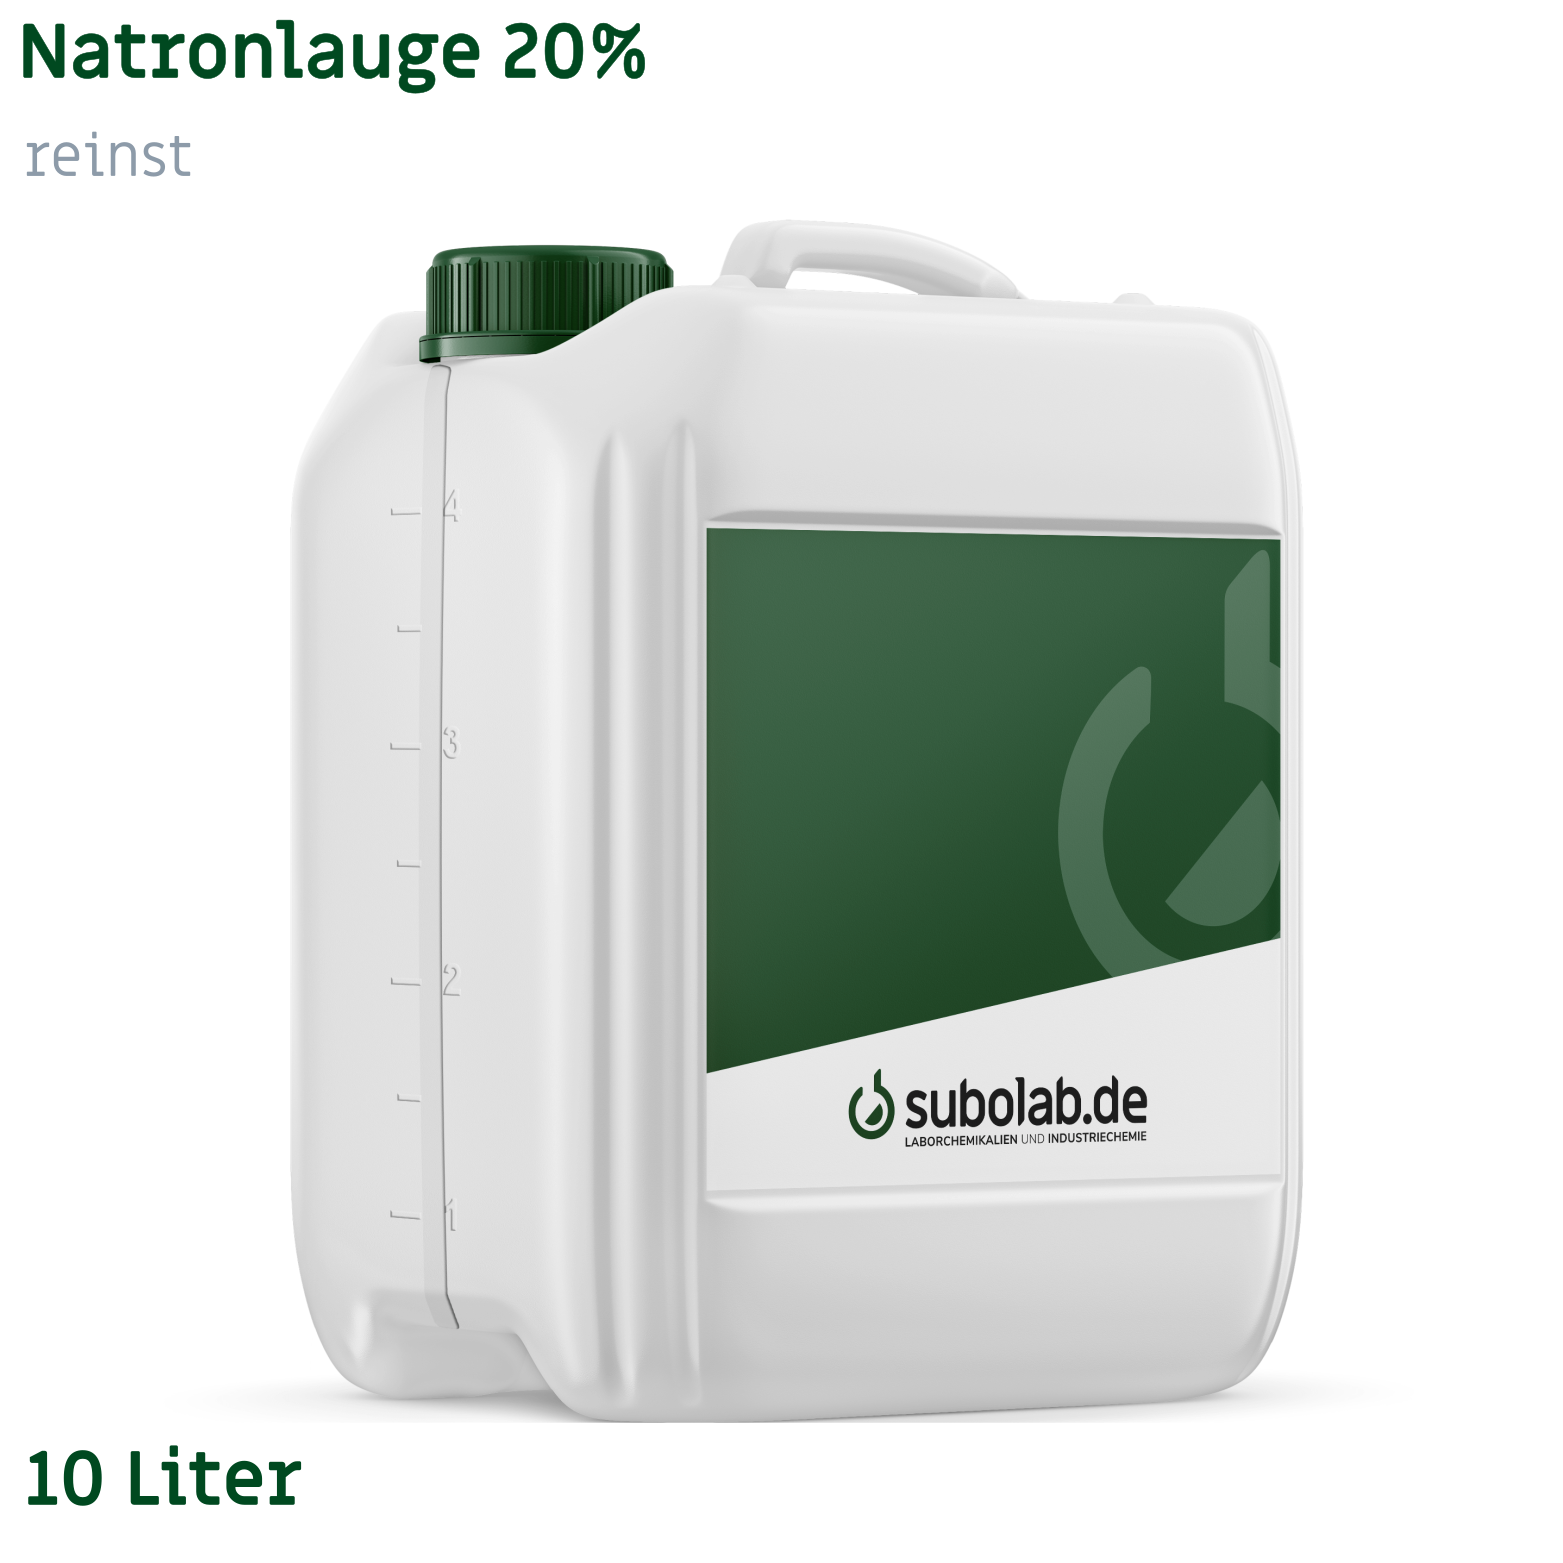 Bild von Natronlauge 20% reinst (10 Liter)